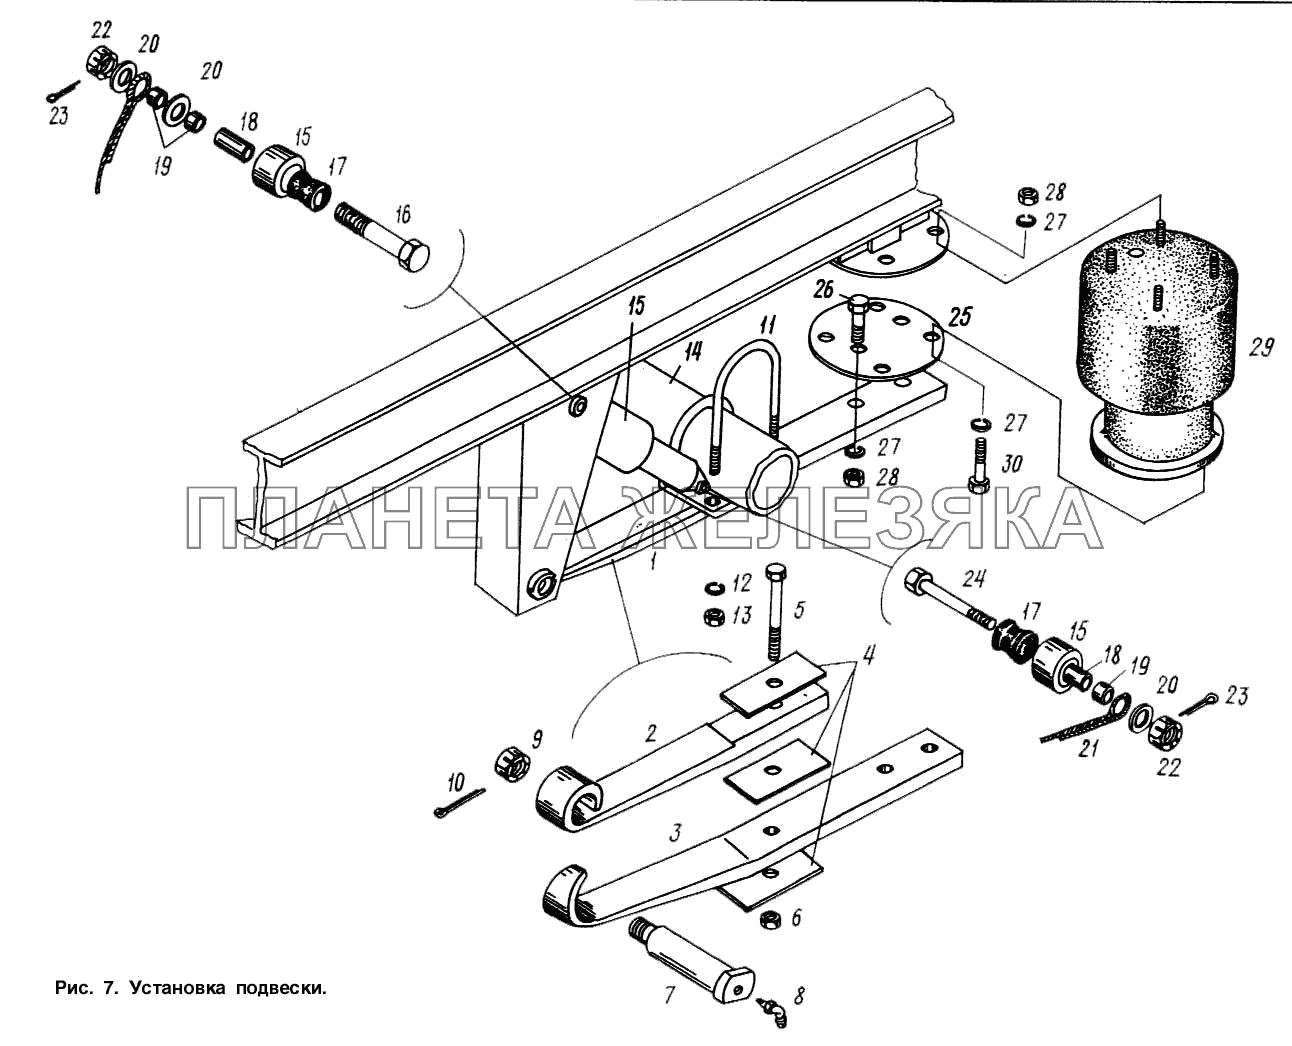 Установка подвески МАЗ-9758-30